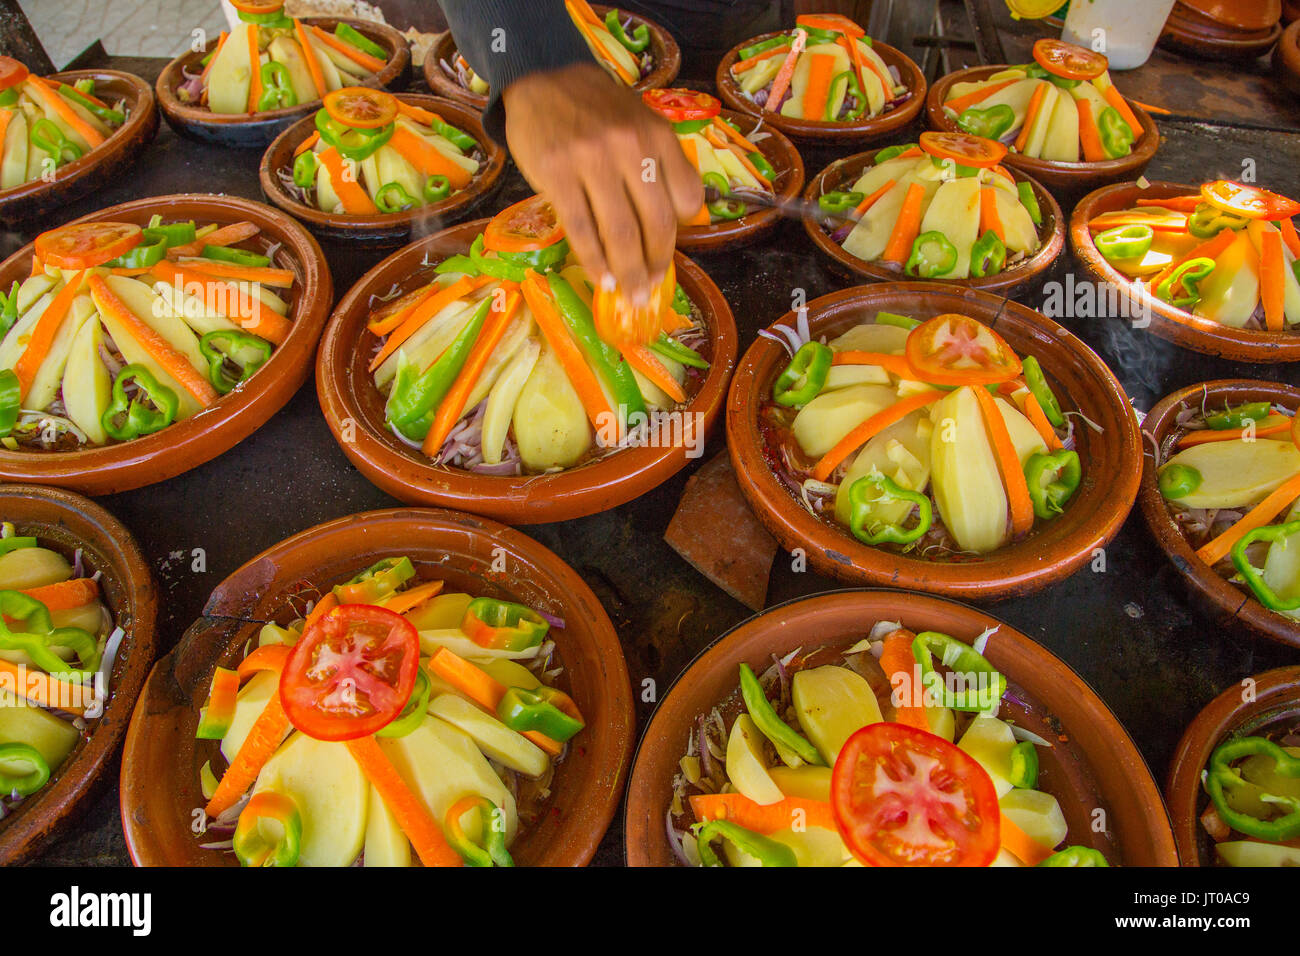 Kochen traditionelle marokkanische Tajine Schale, Fleisch und Gemüse.  Marokko, Maghreb Nordafrika Stockfotografie - Alamy